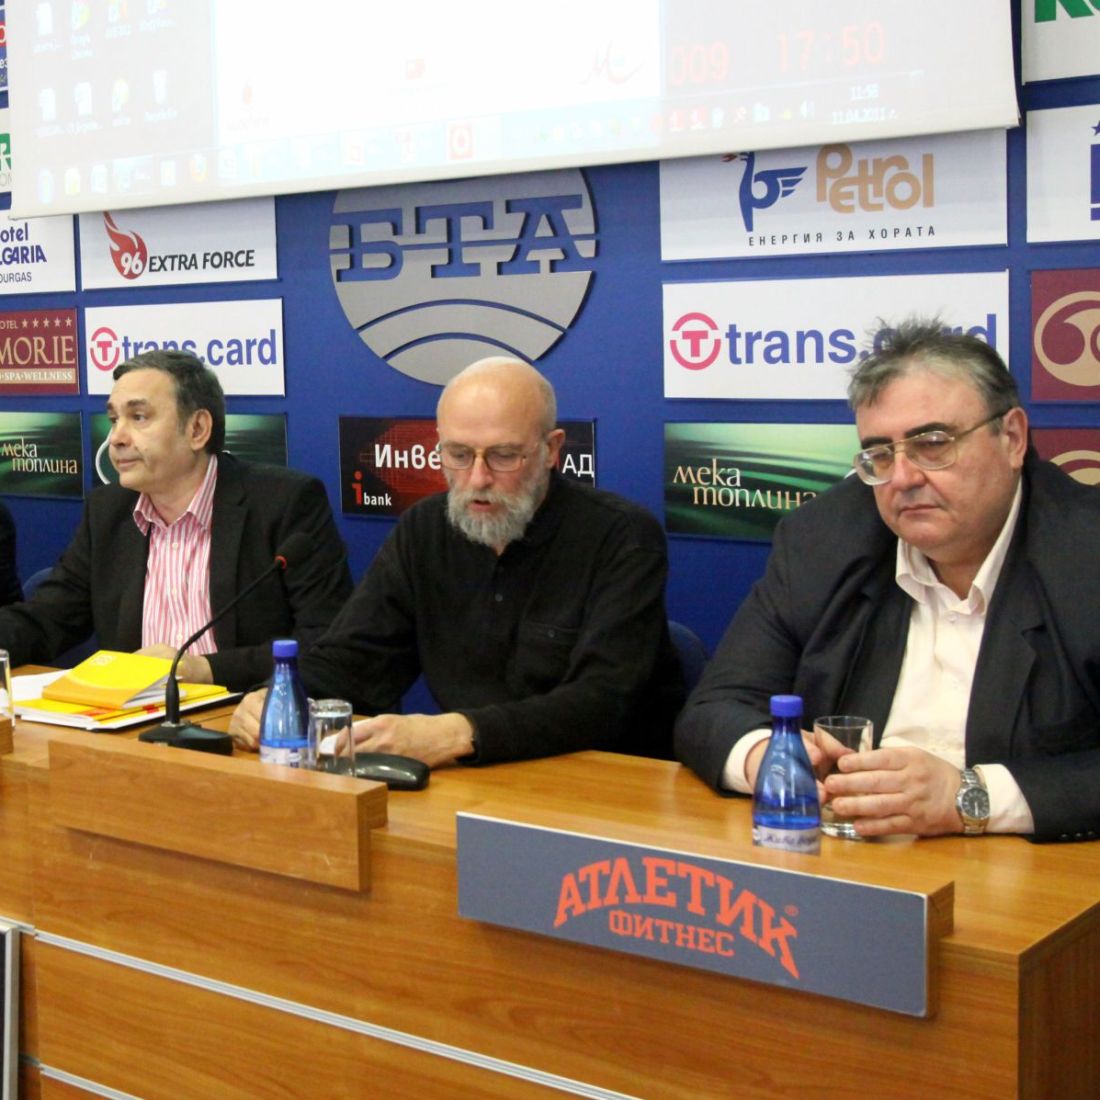 Димитър Иванов, Едвин Сугарев и Огнян Минчев смятат, че проектът трябва да бъде прекратен